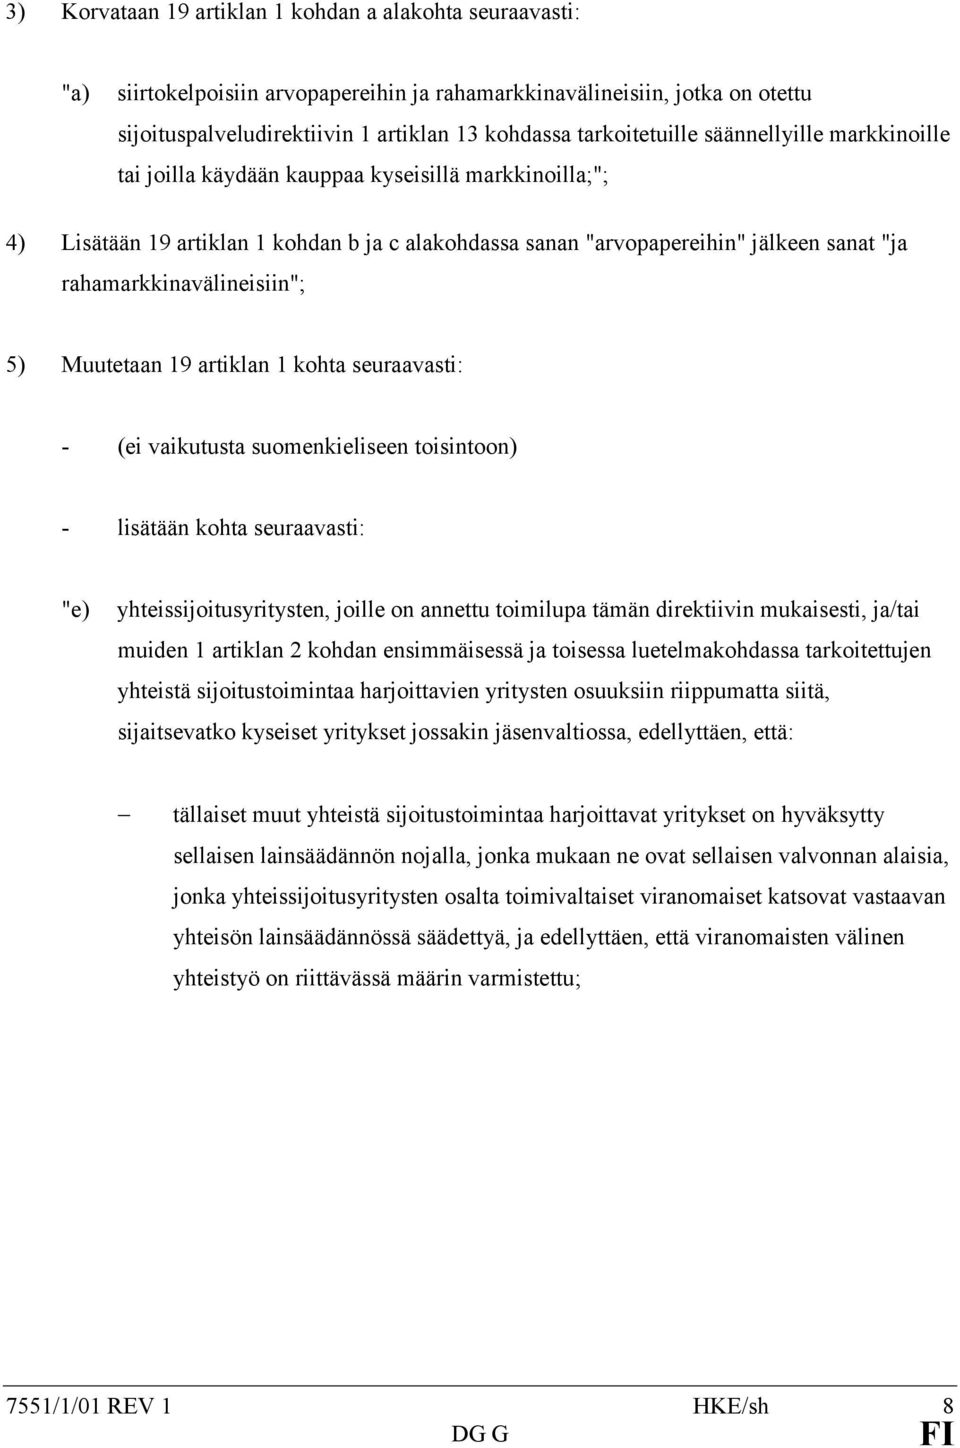 rahamarkkinavälineisiin"; 5) Muutetaan 19 artiklan 1 kohta seuraavasti: - (ei vaikutusta suomenkieliseen toisintoon) - lisätään kohta seuraavasti: "e) yhteissijoitusyritysten, joille on annettu